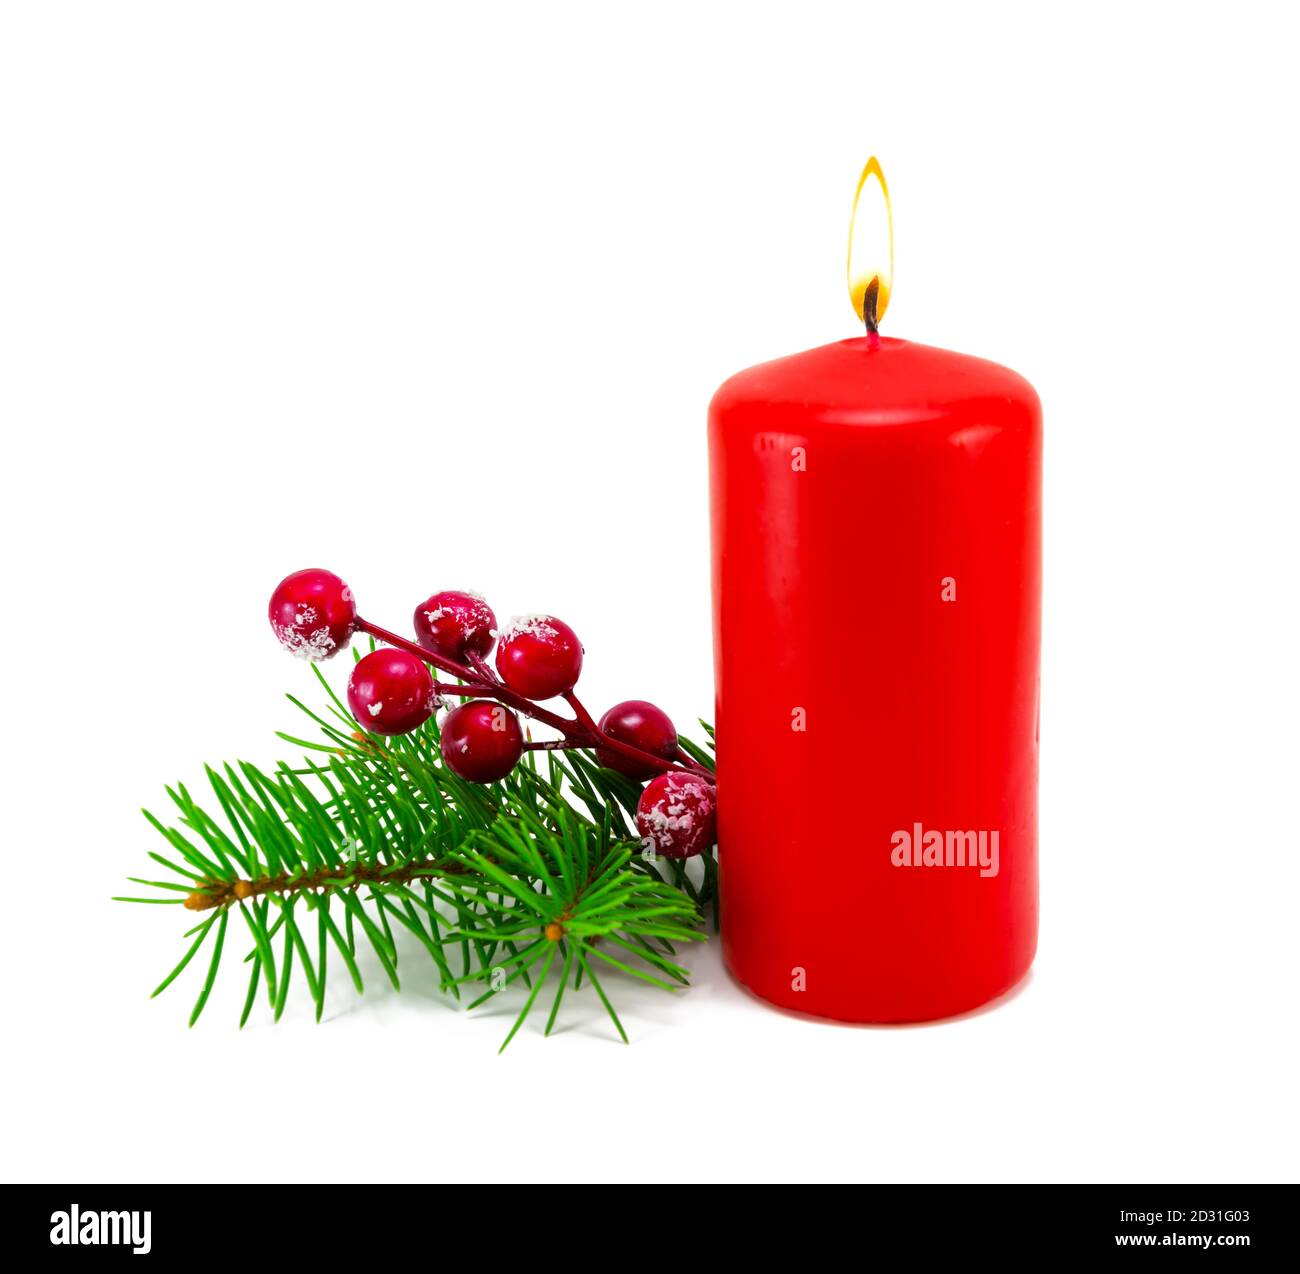 Décoration de Noël avec bougies et branches de sapin. Branche de sapin de Noël avec bougie rouge isolée sur fond blanc. Banque D'Images